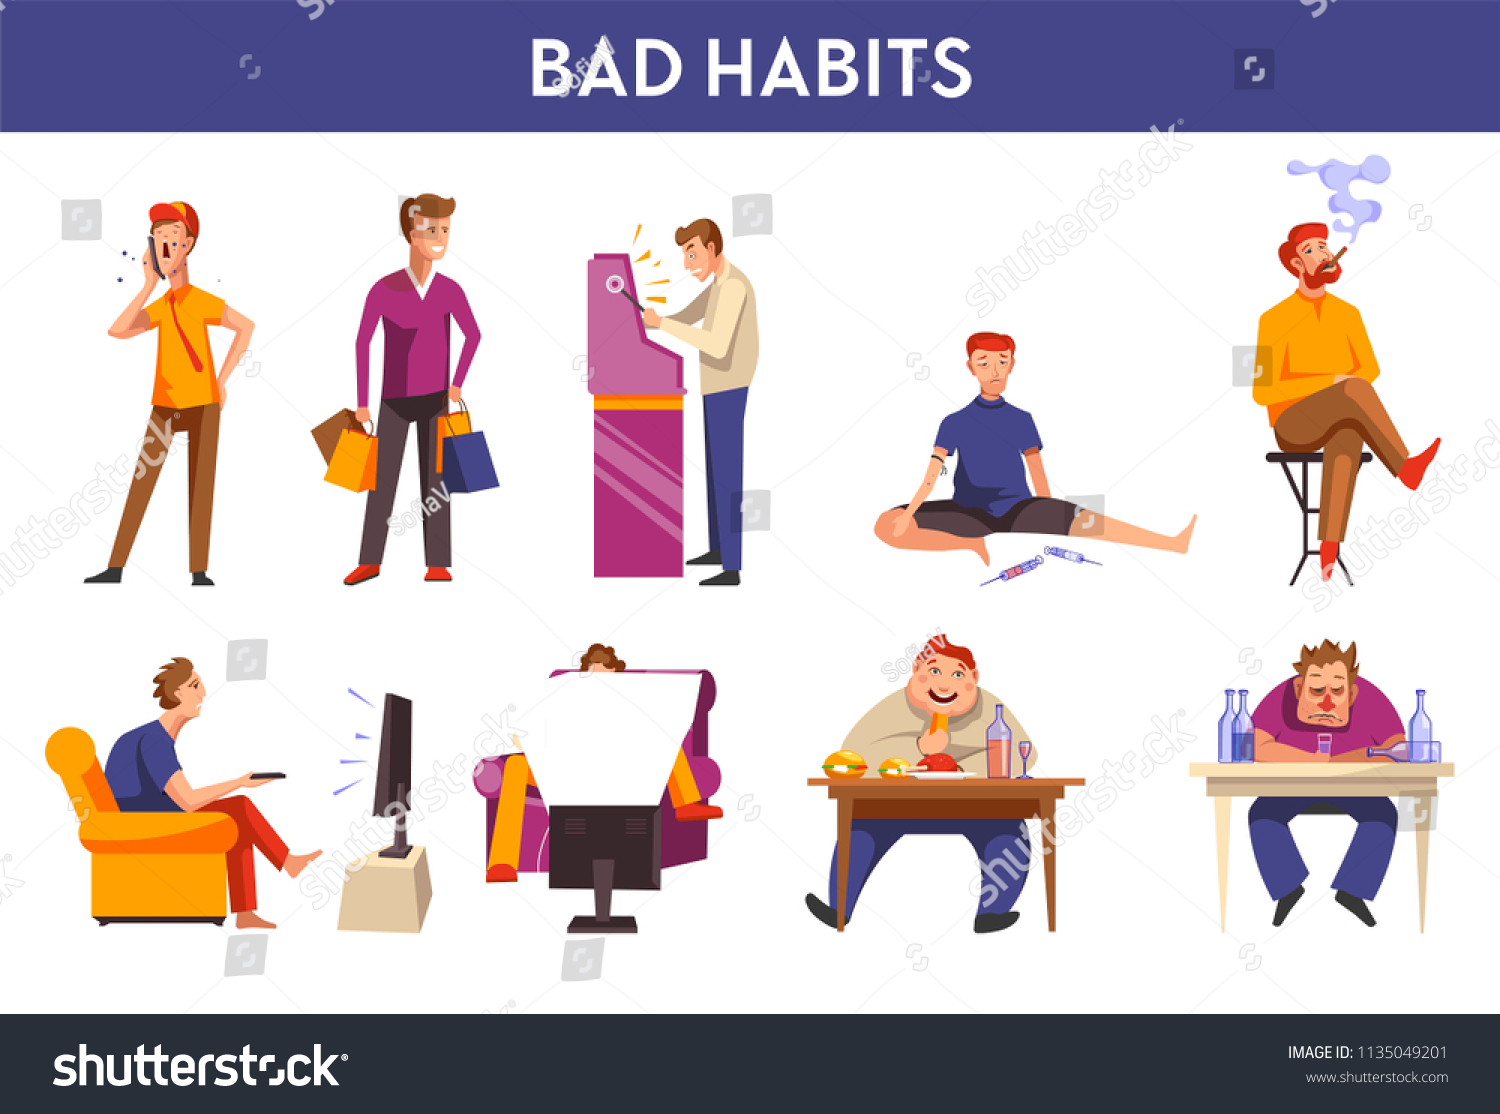 Bad habits pelicula